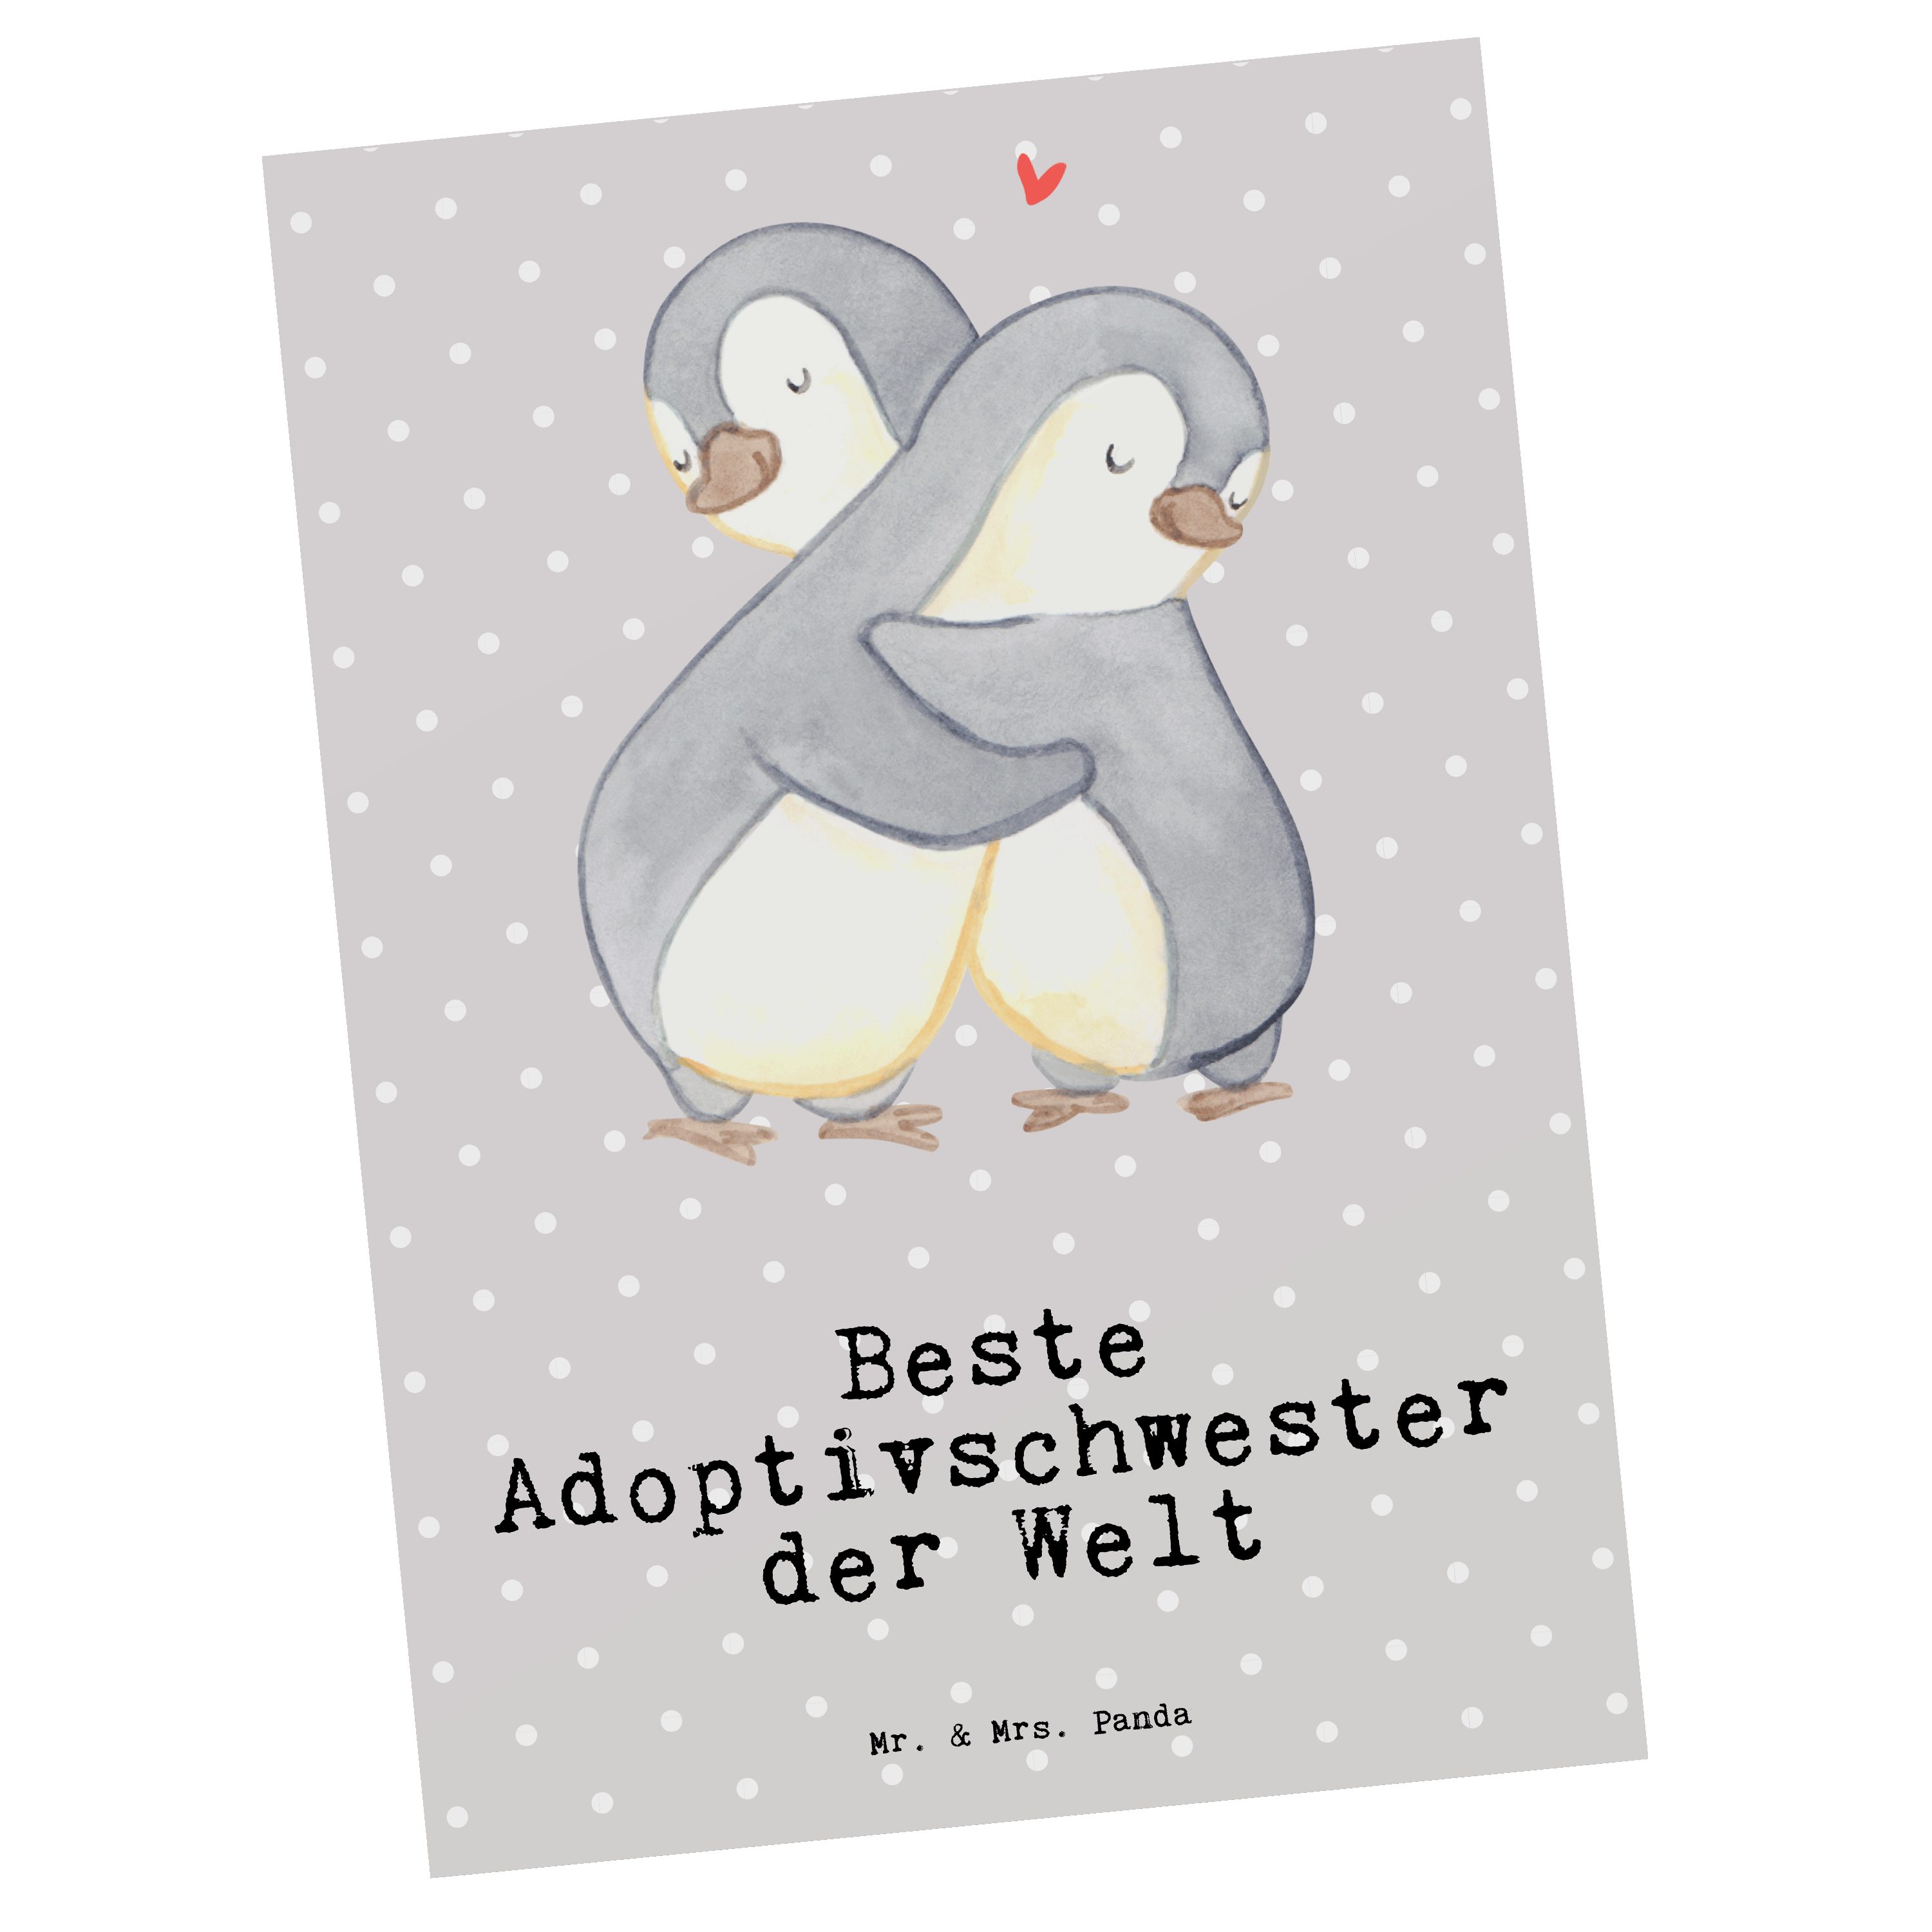 Beste Pinguin Postkarte - Mrs. der Pastell Grau Geschenk, Welt Adoptivschwester Ge Panda & - Mr.